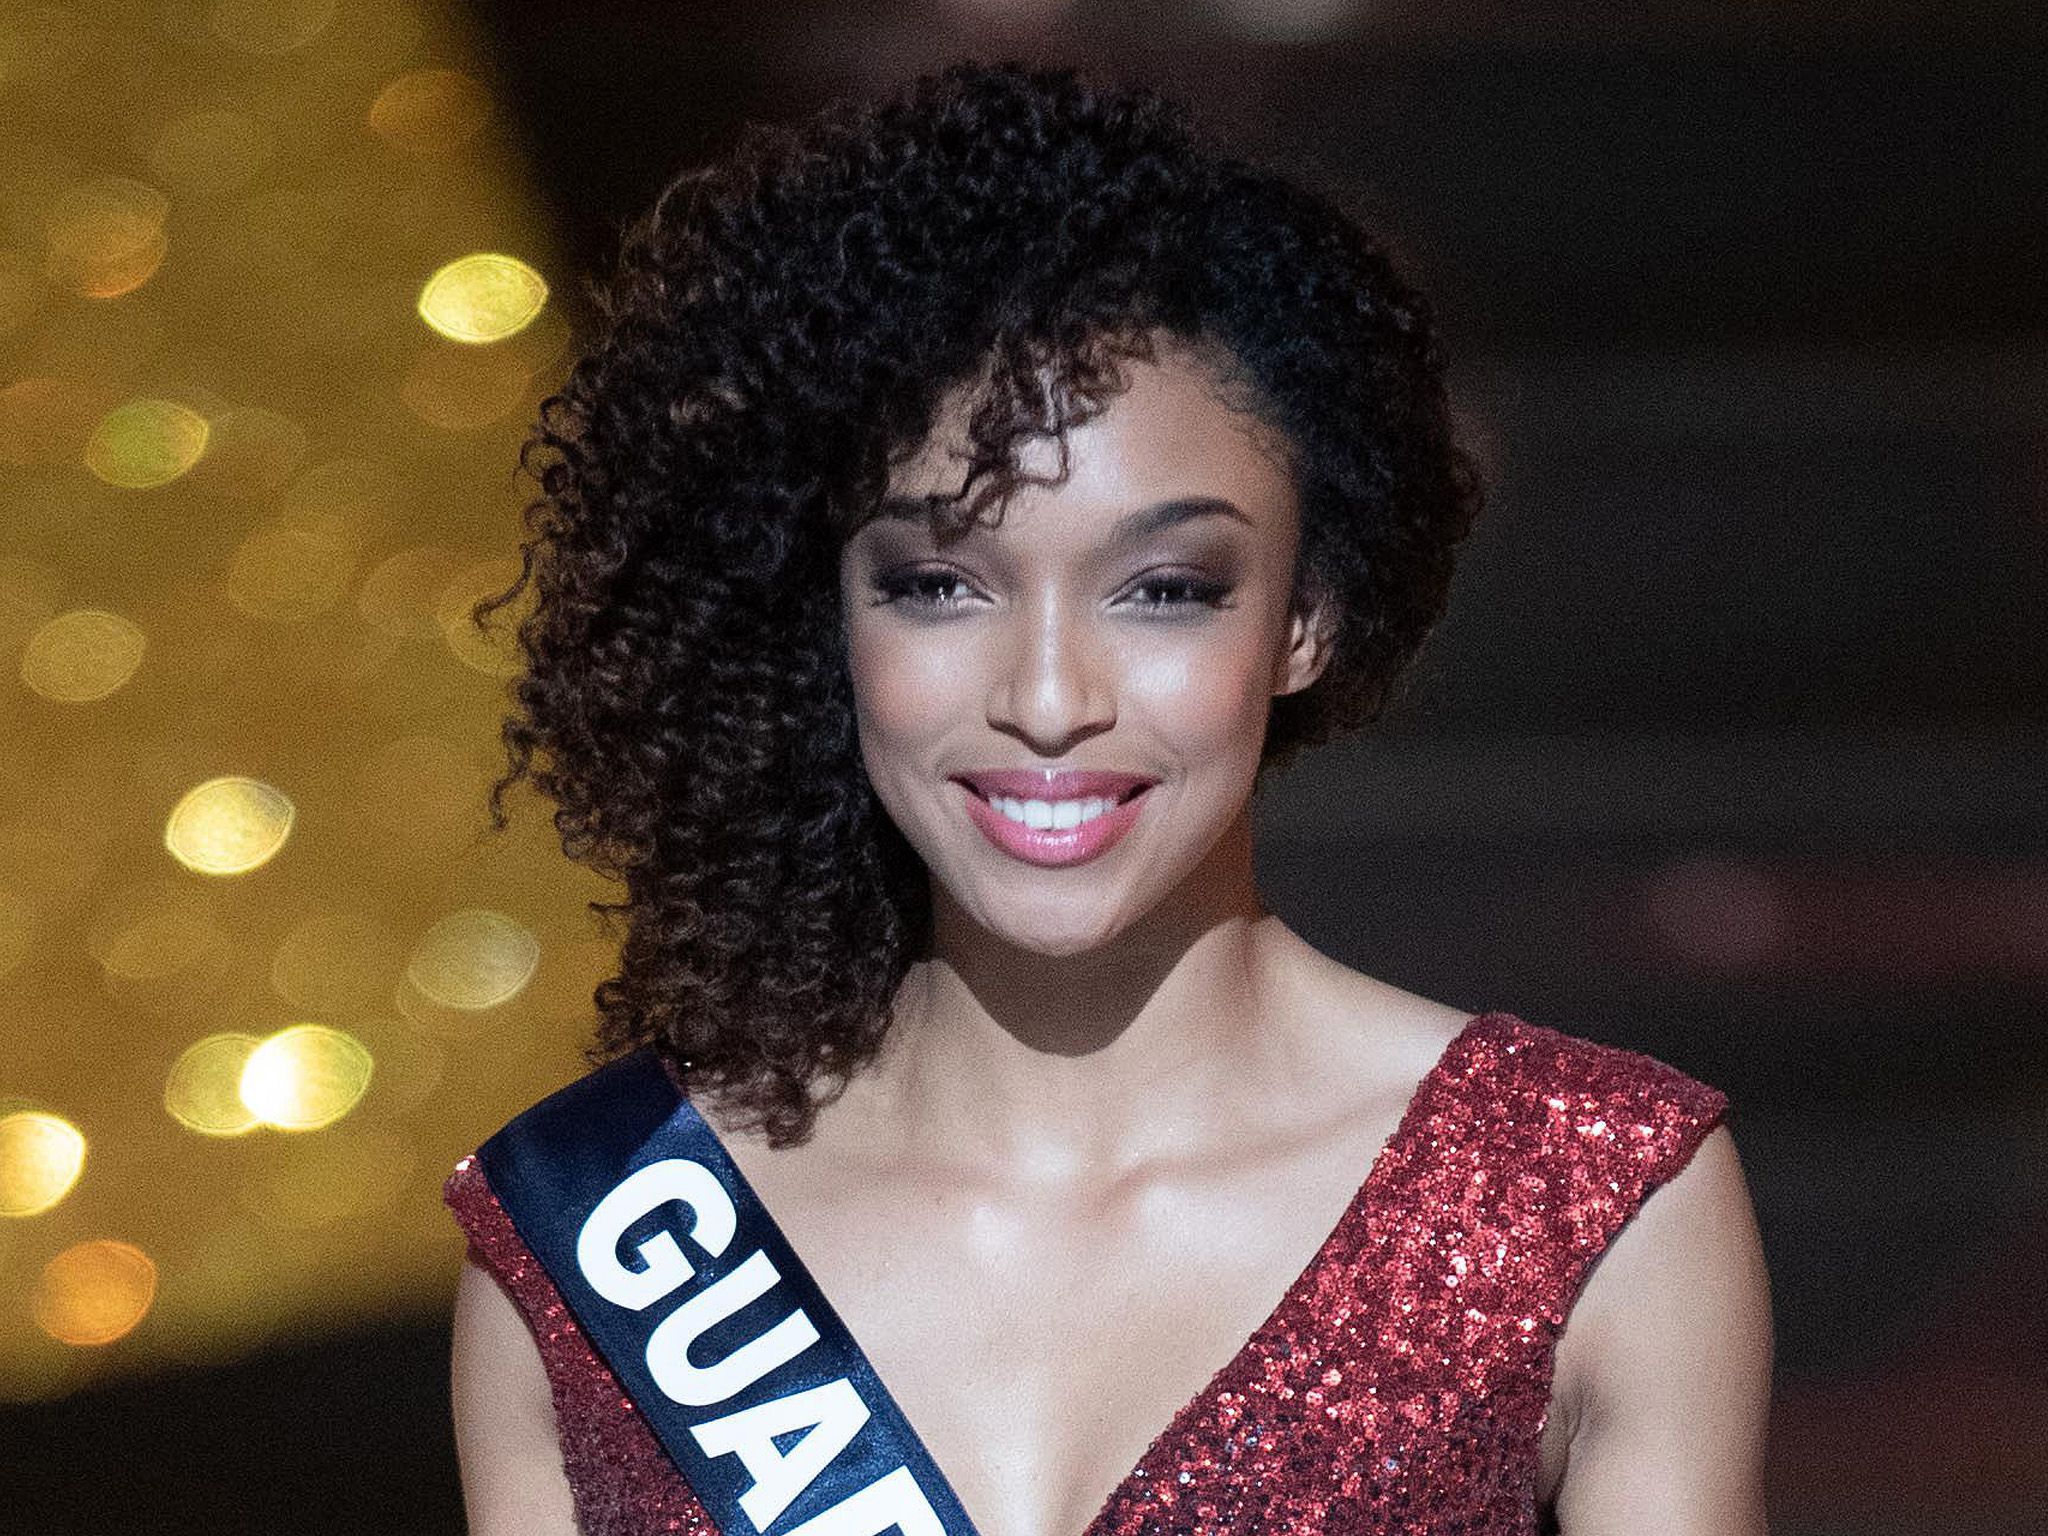 Miss Monde 2019 : Pourquoi Ophély Mezino pourrait remporter le concours